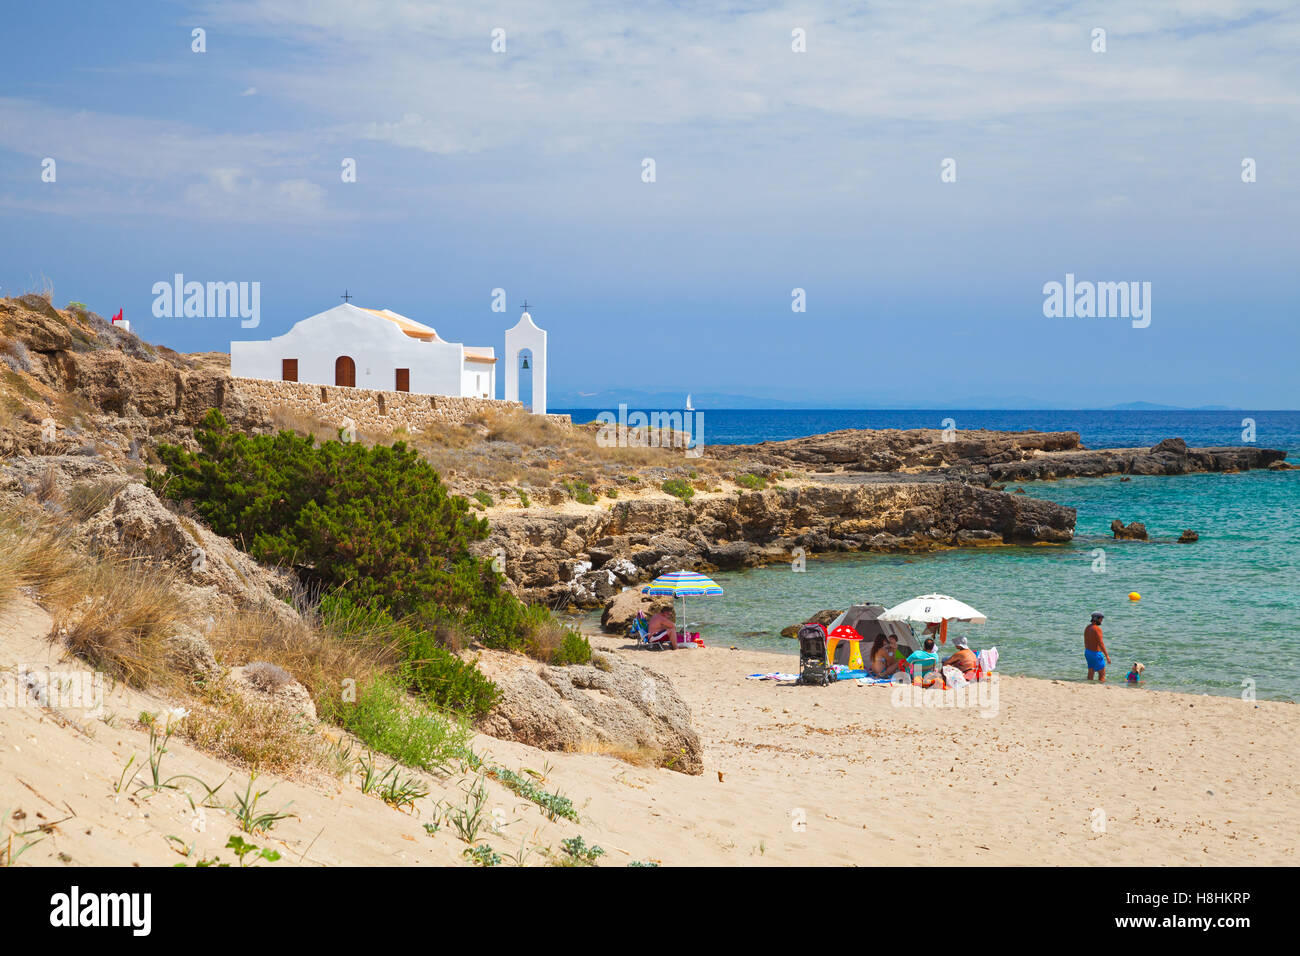 Zakynthos, Grèce - le 18 août 2016 : paysage côtier de la plage d''Agios Nikolaos. Église orthodoxe blanc sur la côte de la mer Ionique Banque D'Images